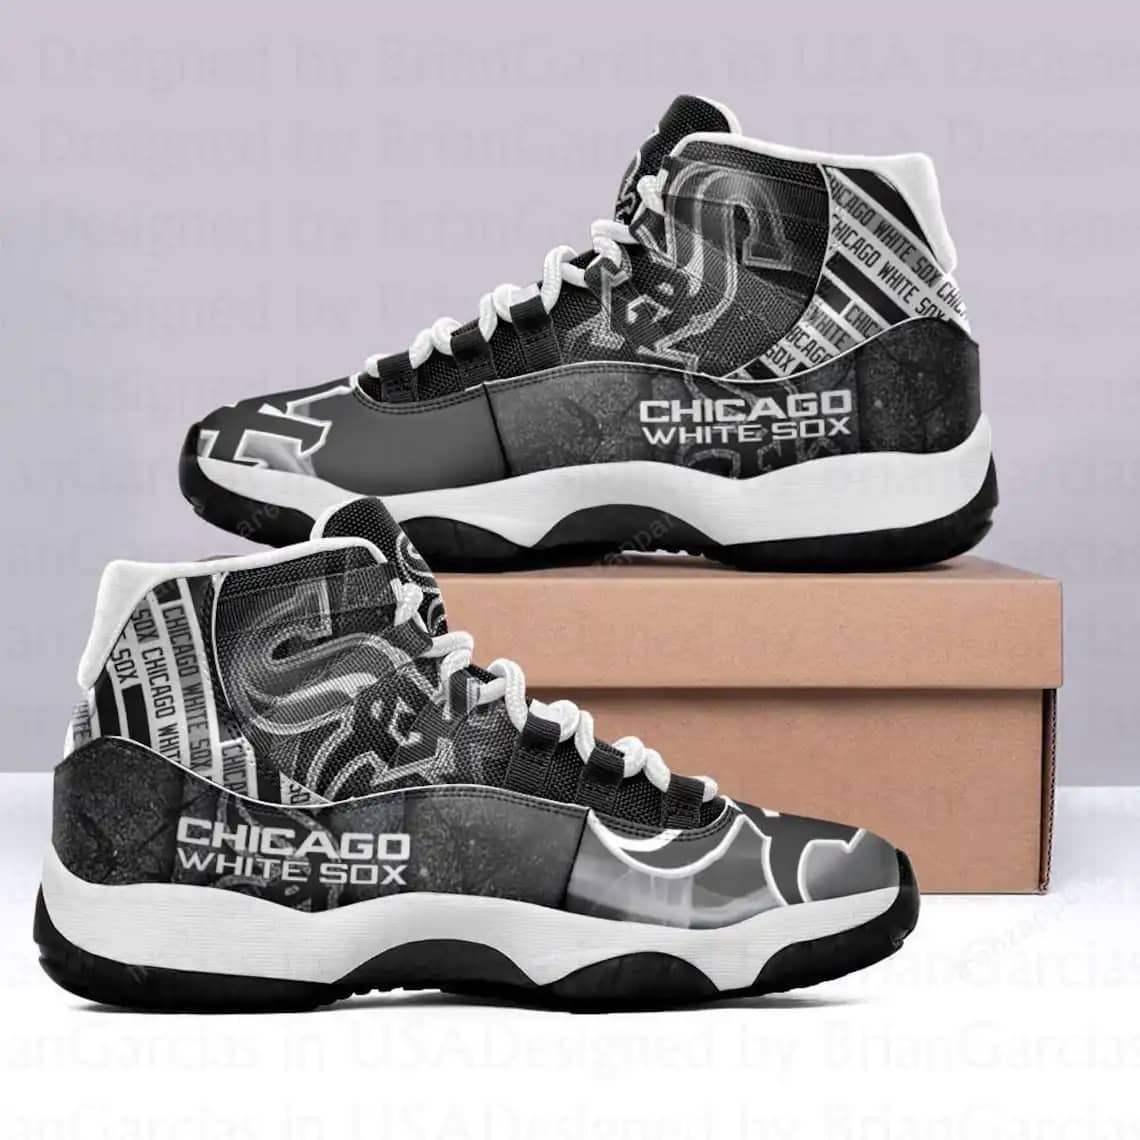 Chicago White Sox Custom Air Jordan 11 Sneakers